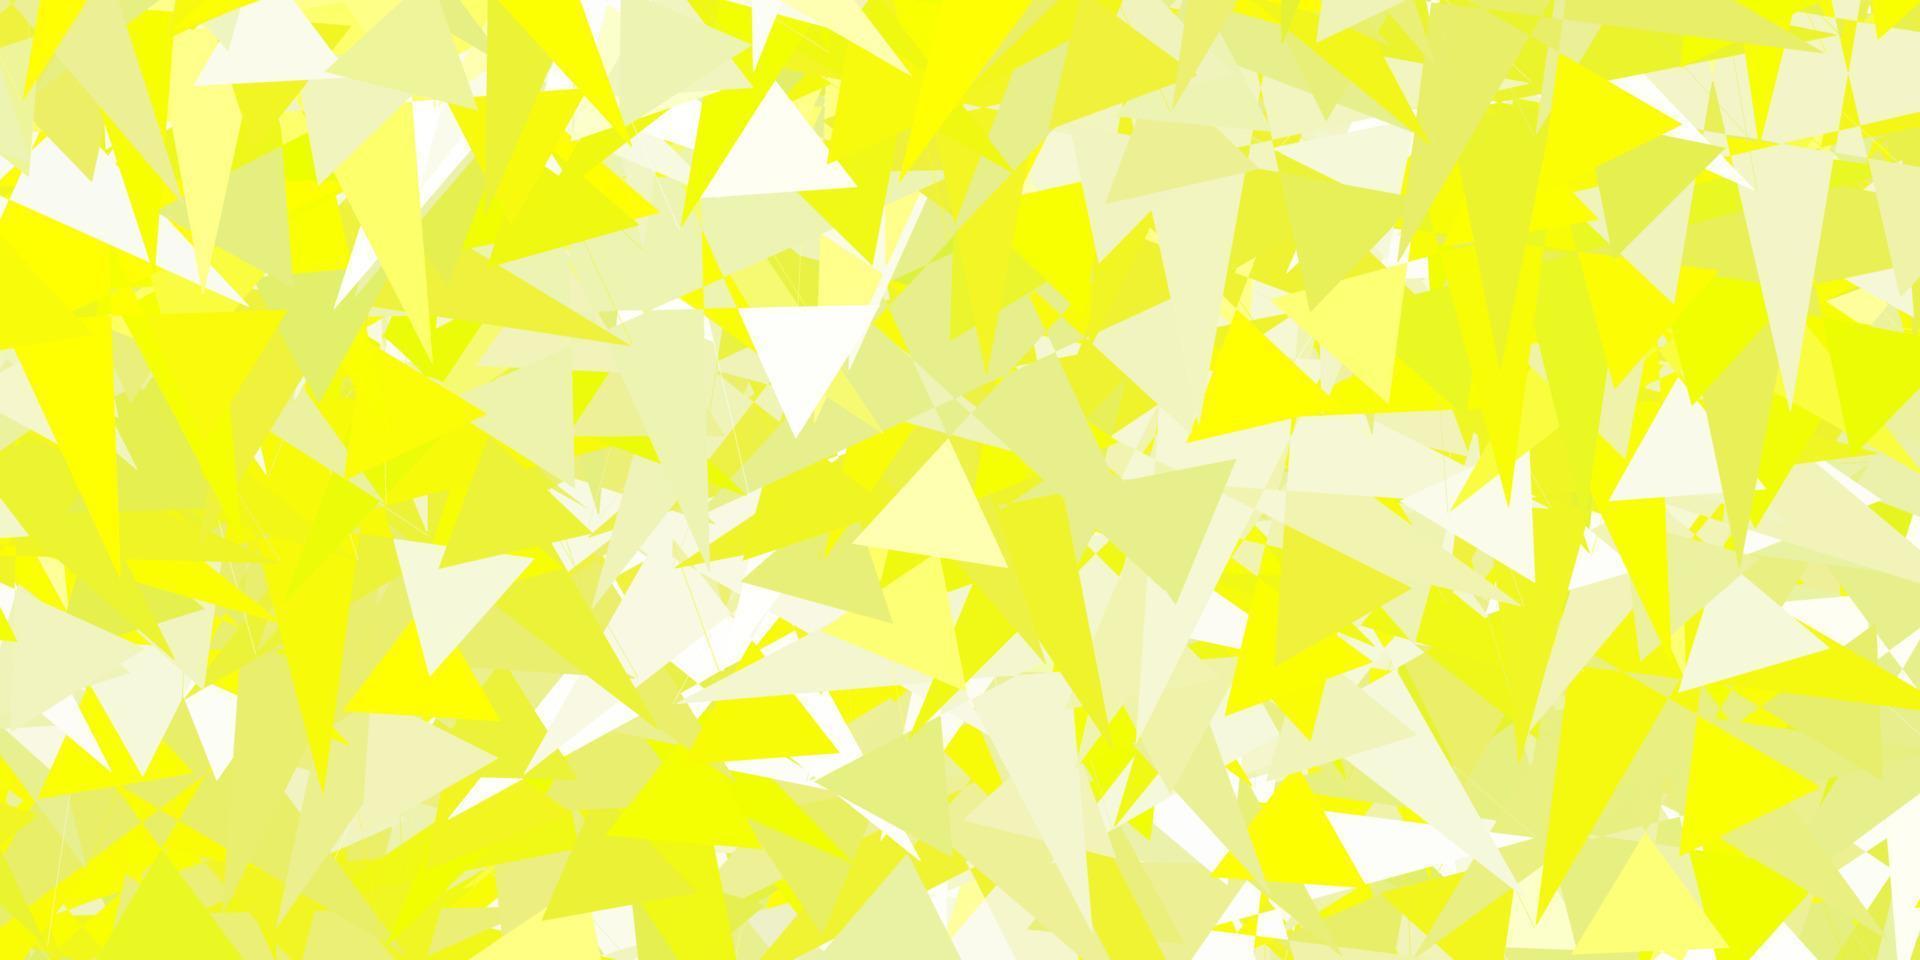 fond de vecteur vert clair, jaune avec des triangles.